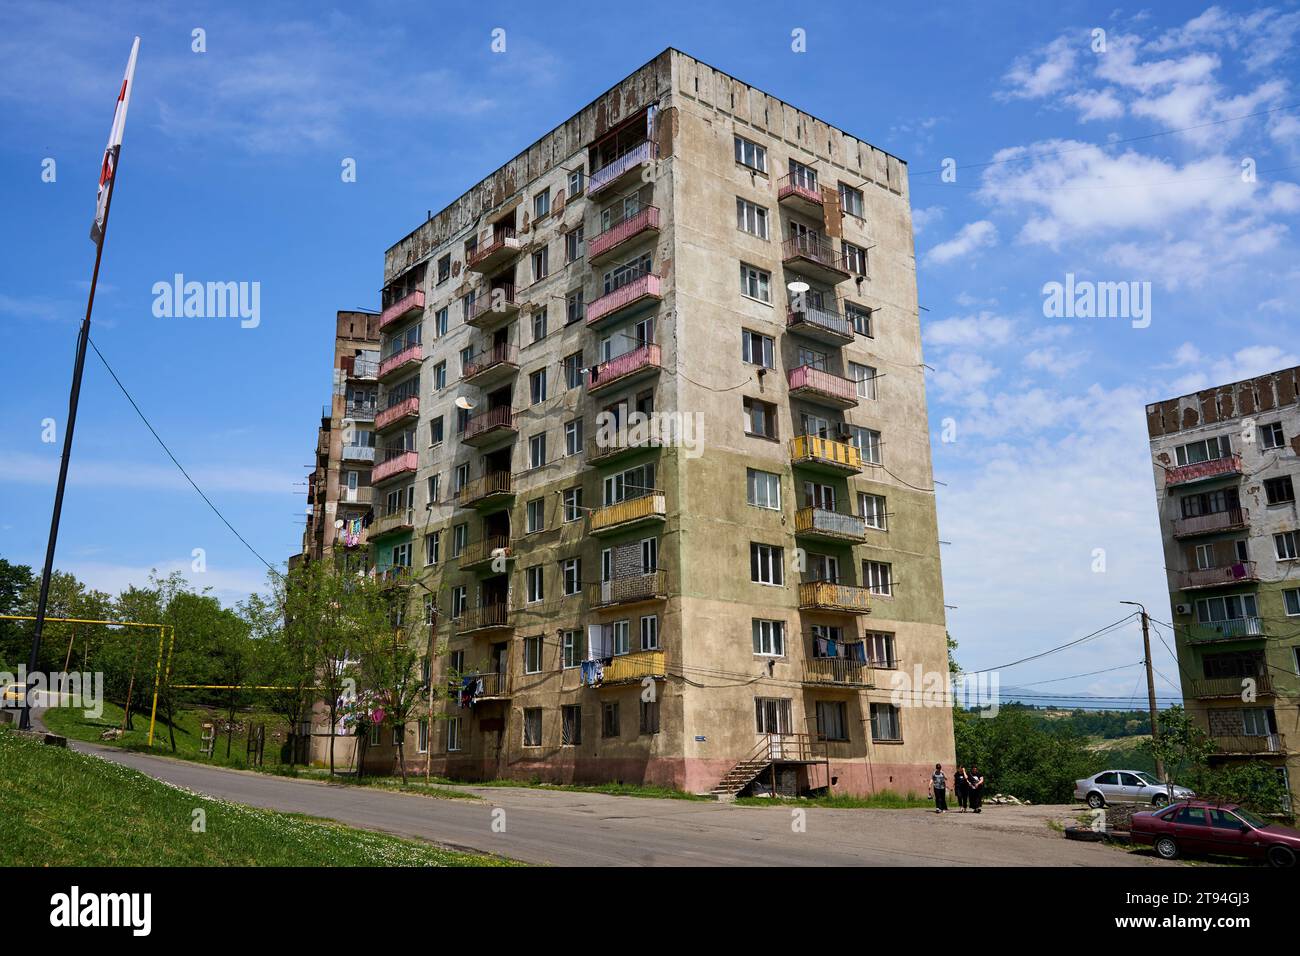 Sowjetische Plattenbauten, renovierungsbedürftig und teilweise unbewohnt, Tschiatura, Tchiatura, Chiatura, Imeretien, Georgien Stock Photo